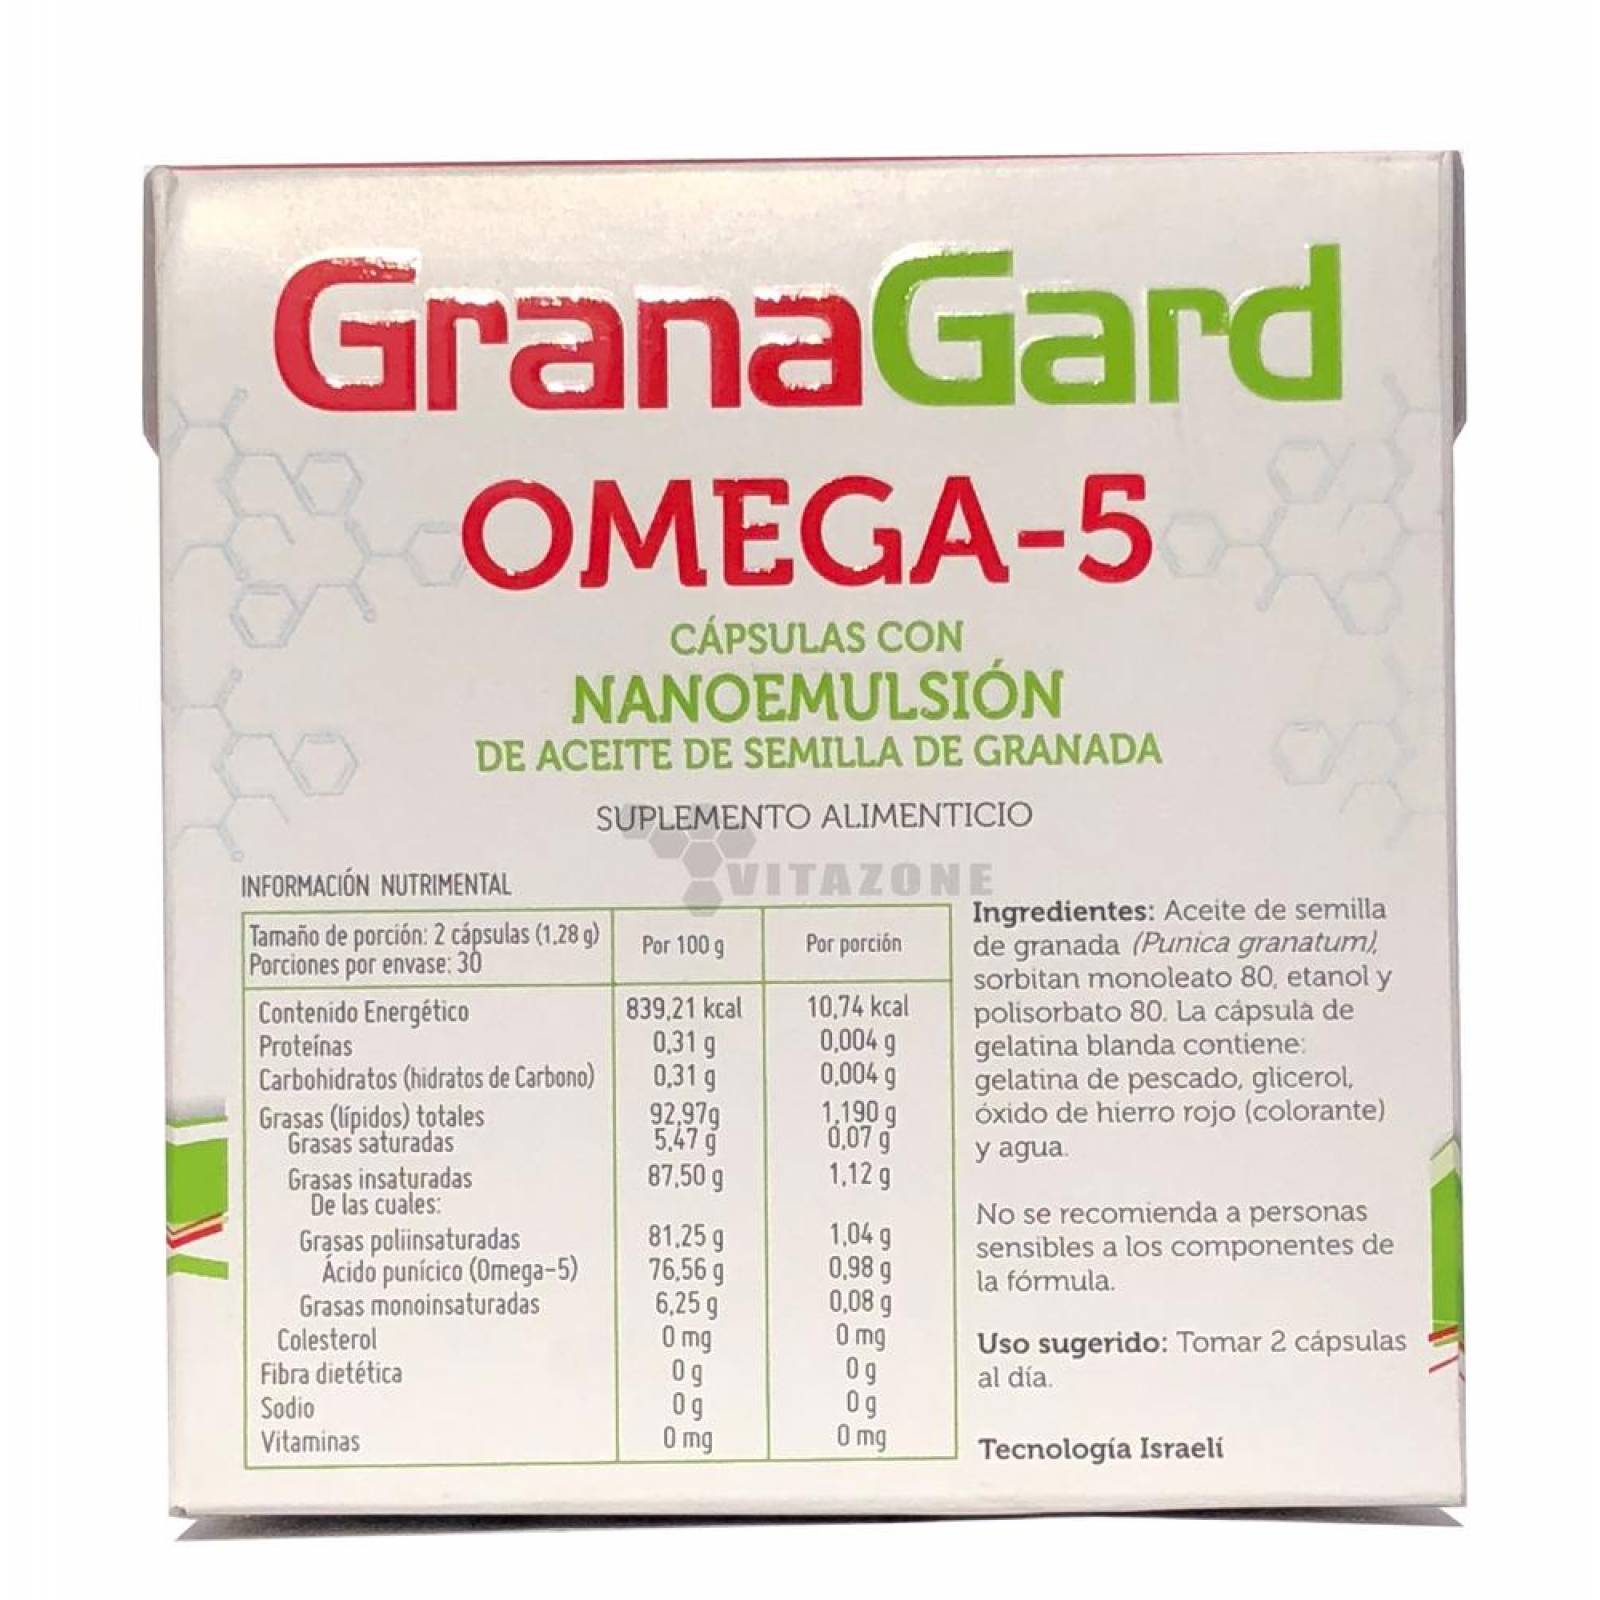 Omega 5 60 cápsulas Grana Gard 